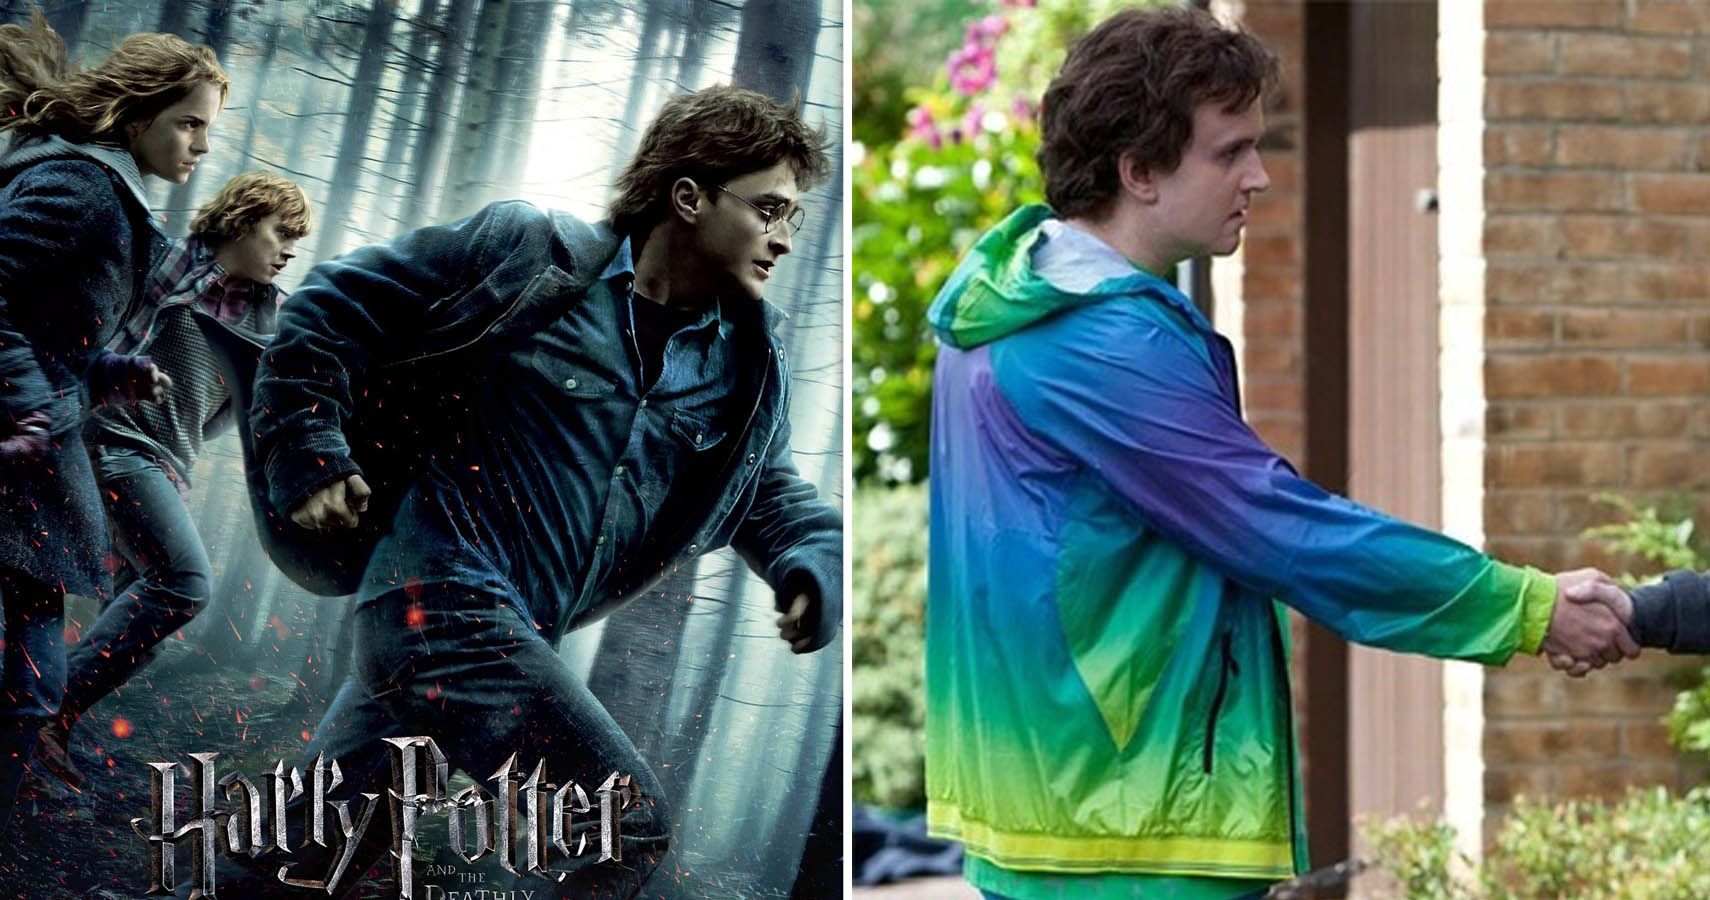 Daniel Radcliffe reveals his favourite Harry Potter film